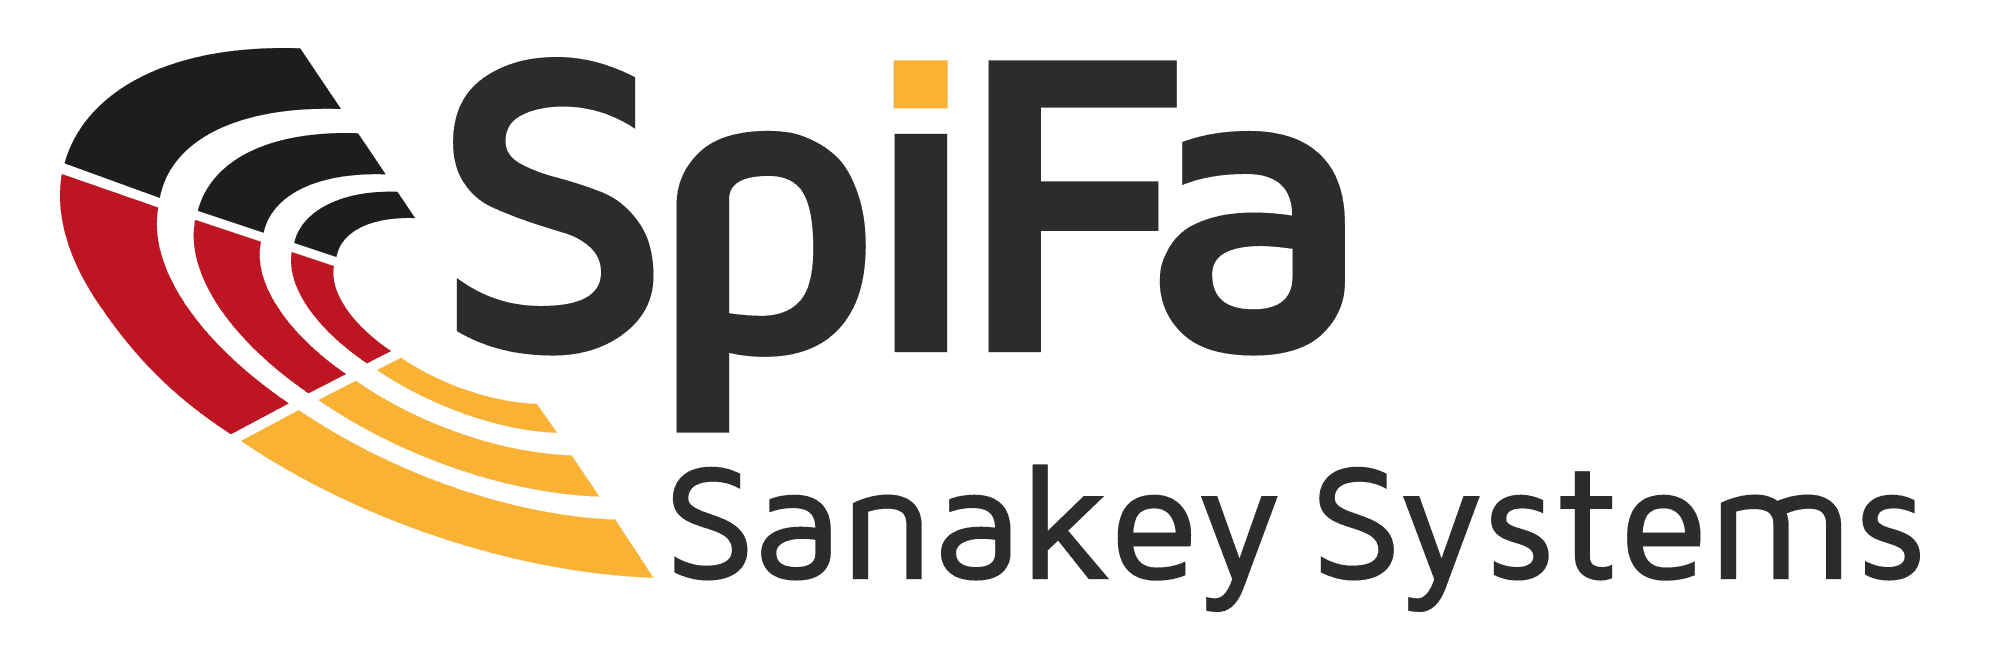 logo spifa sanakey systems